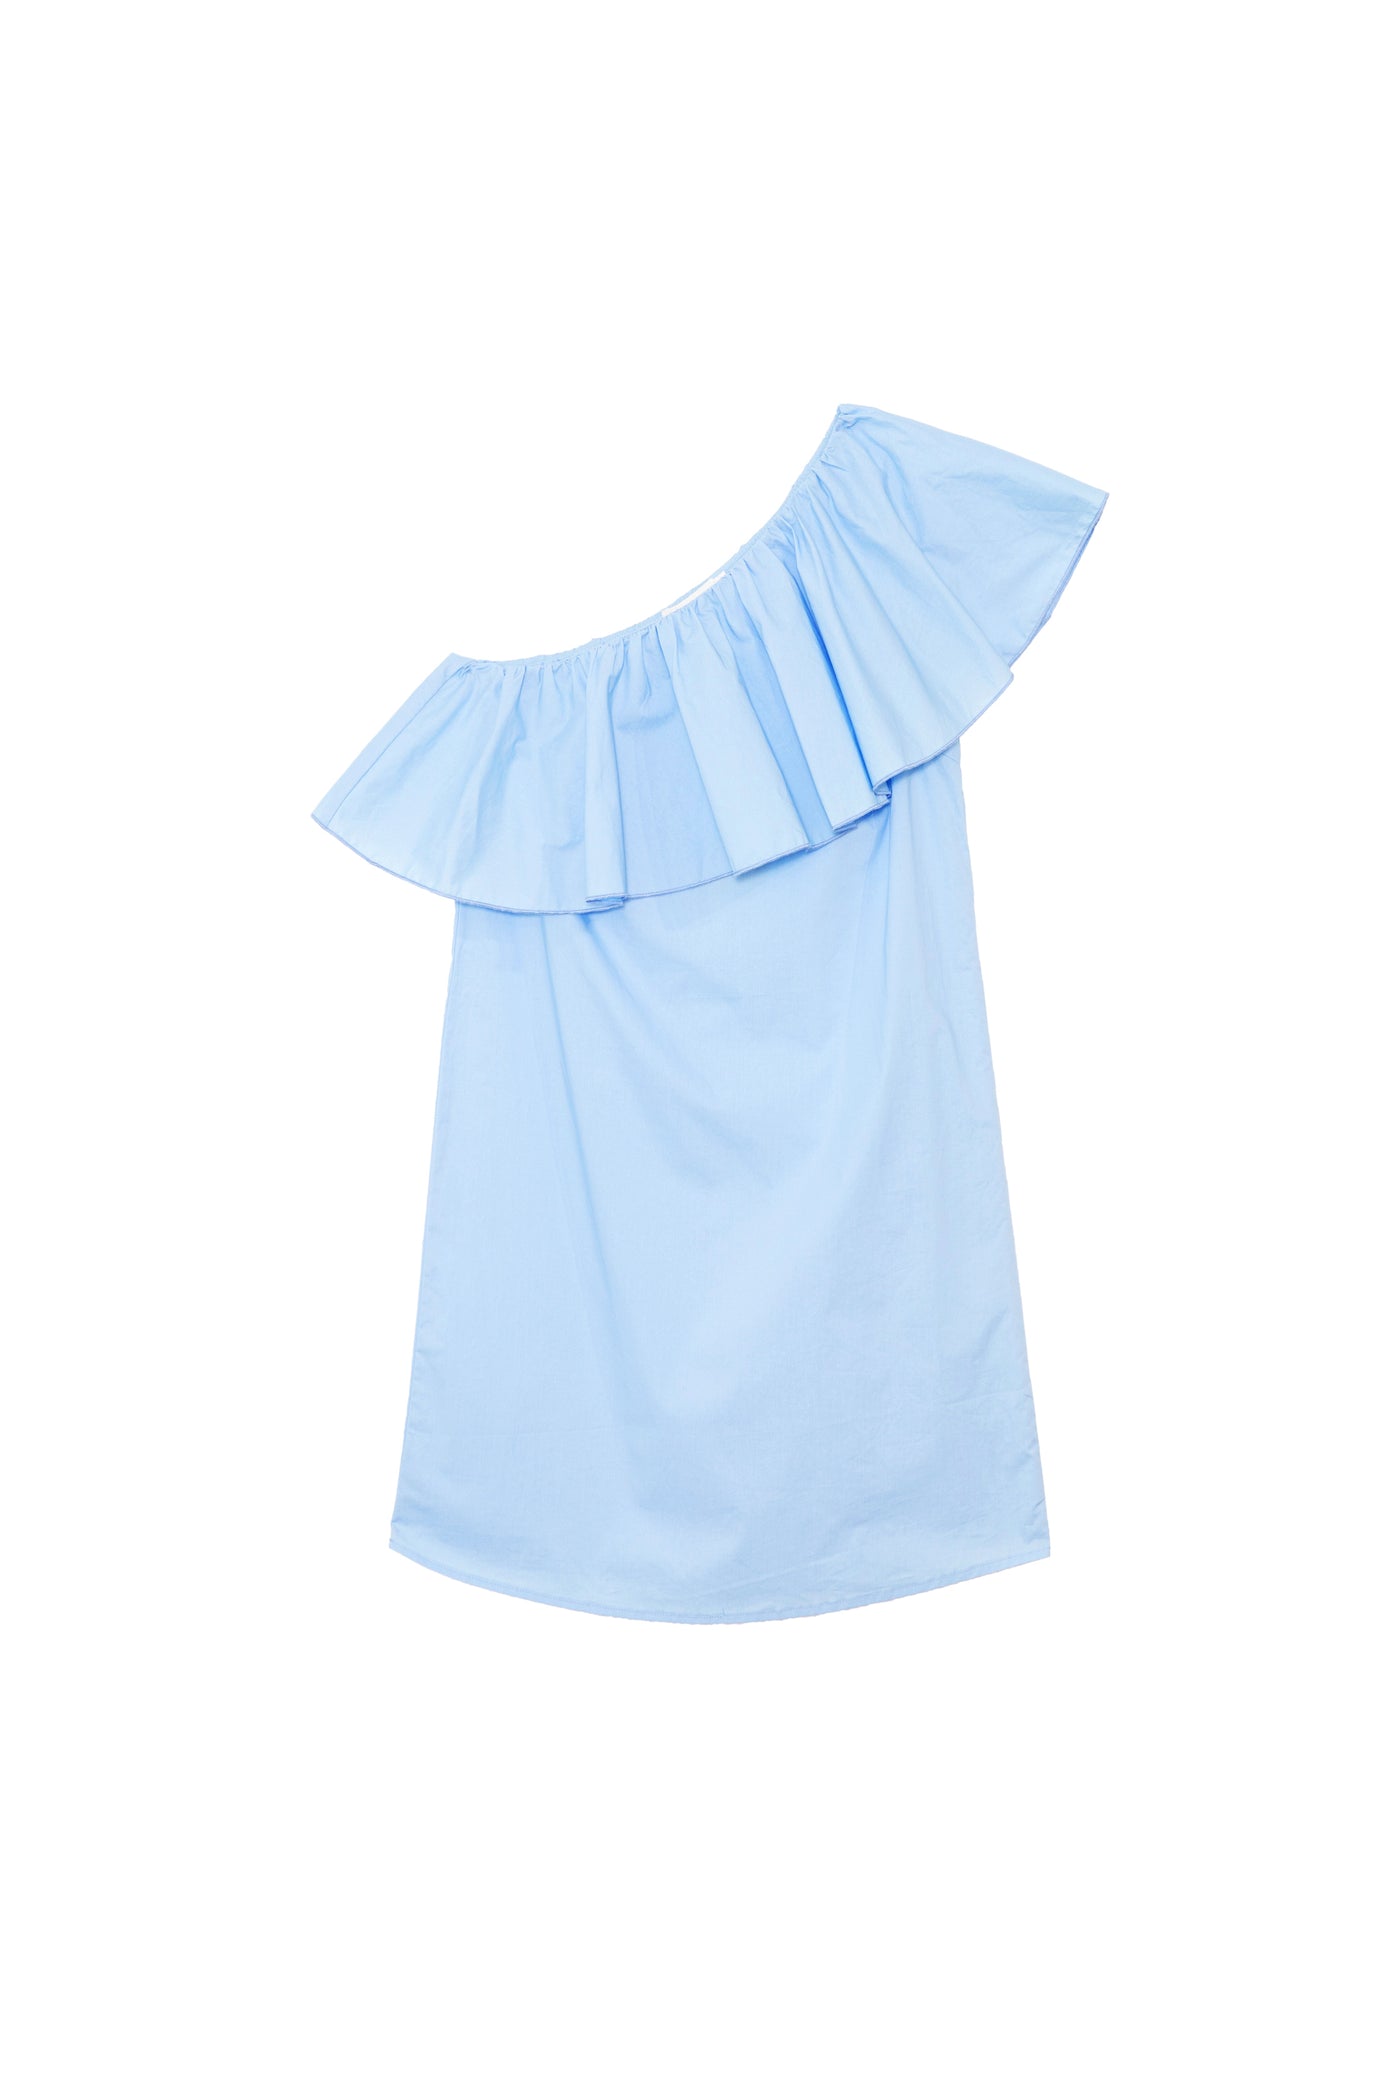 Dress Rimel - Bleu